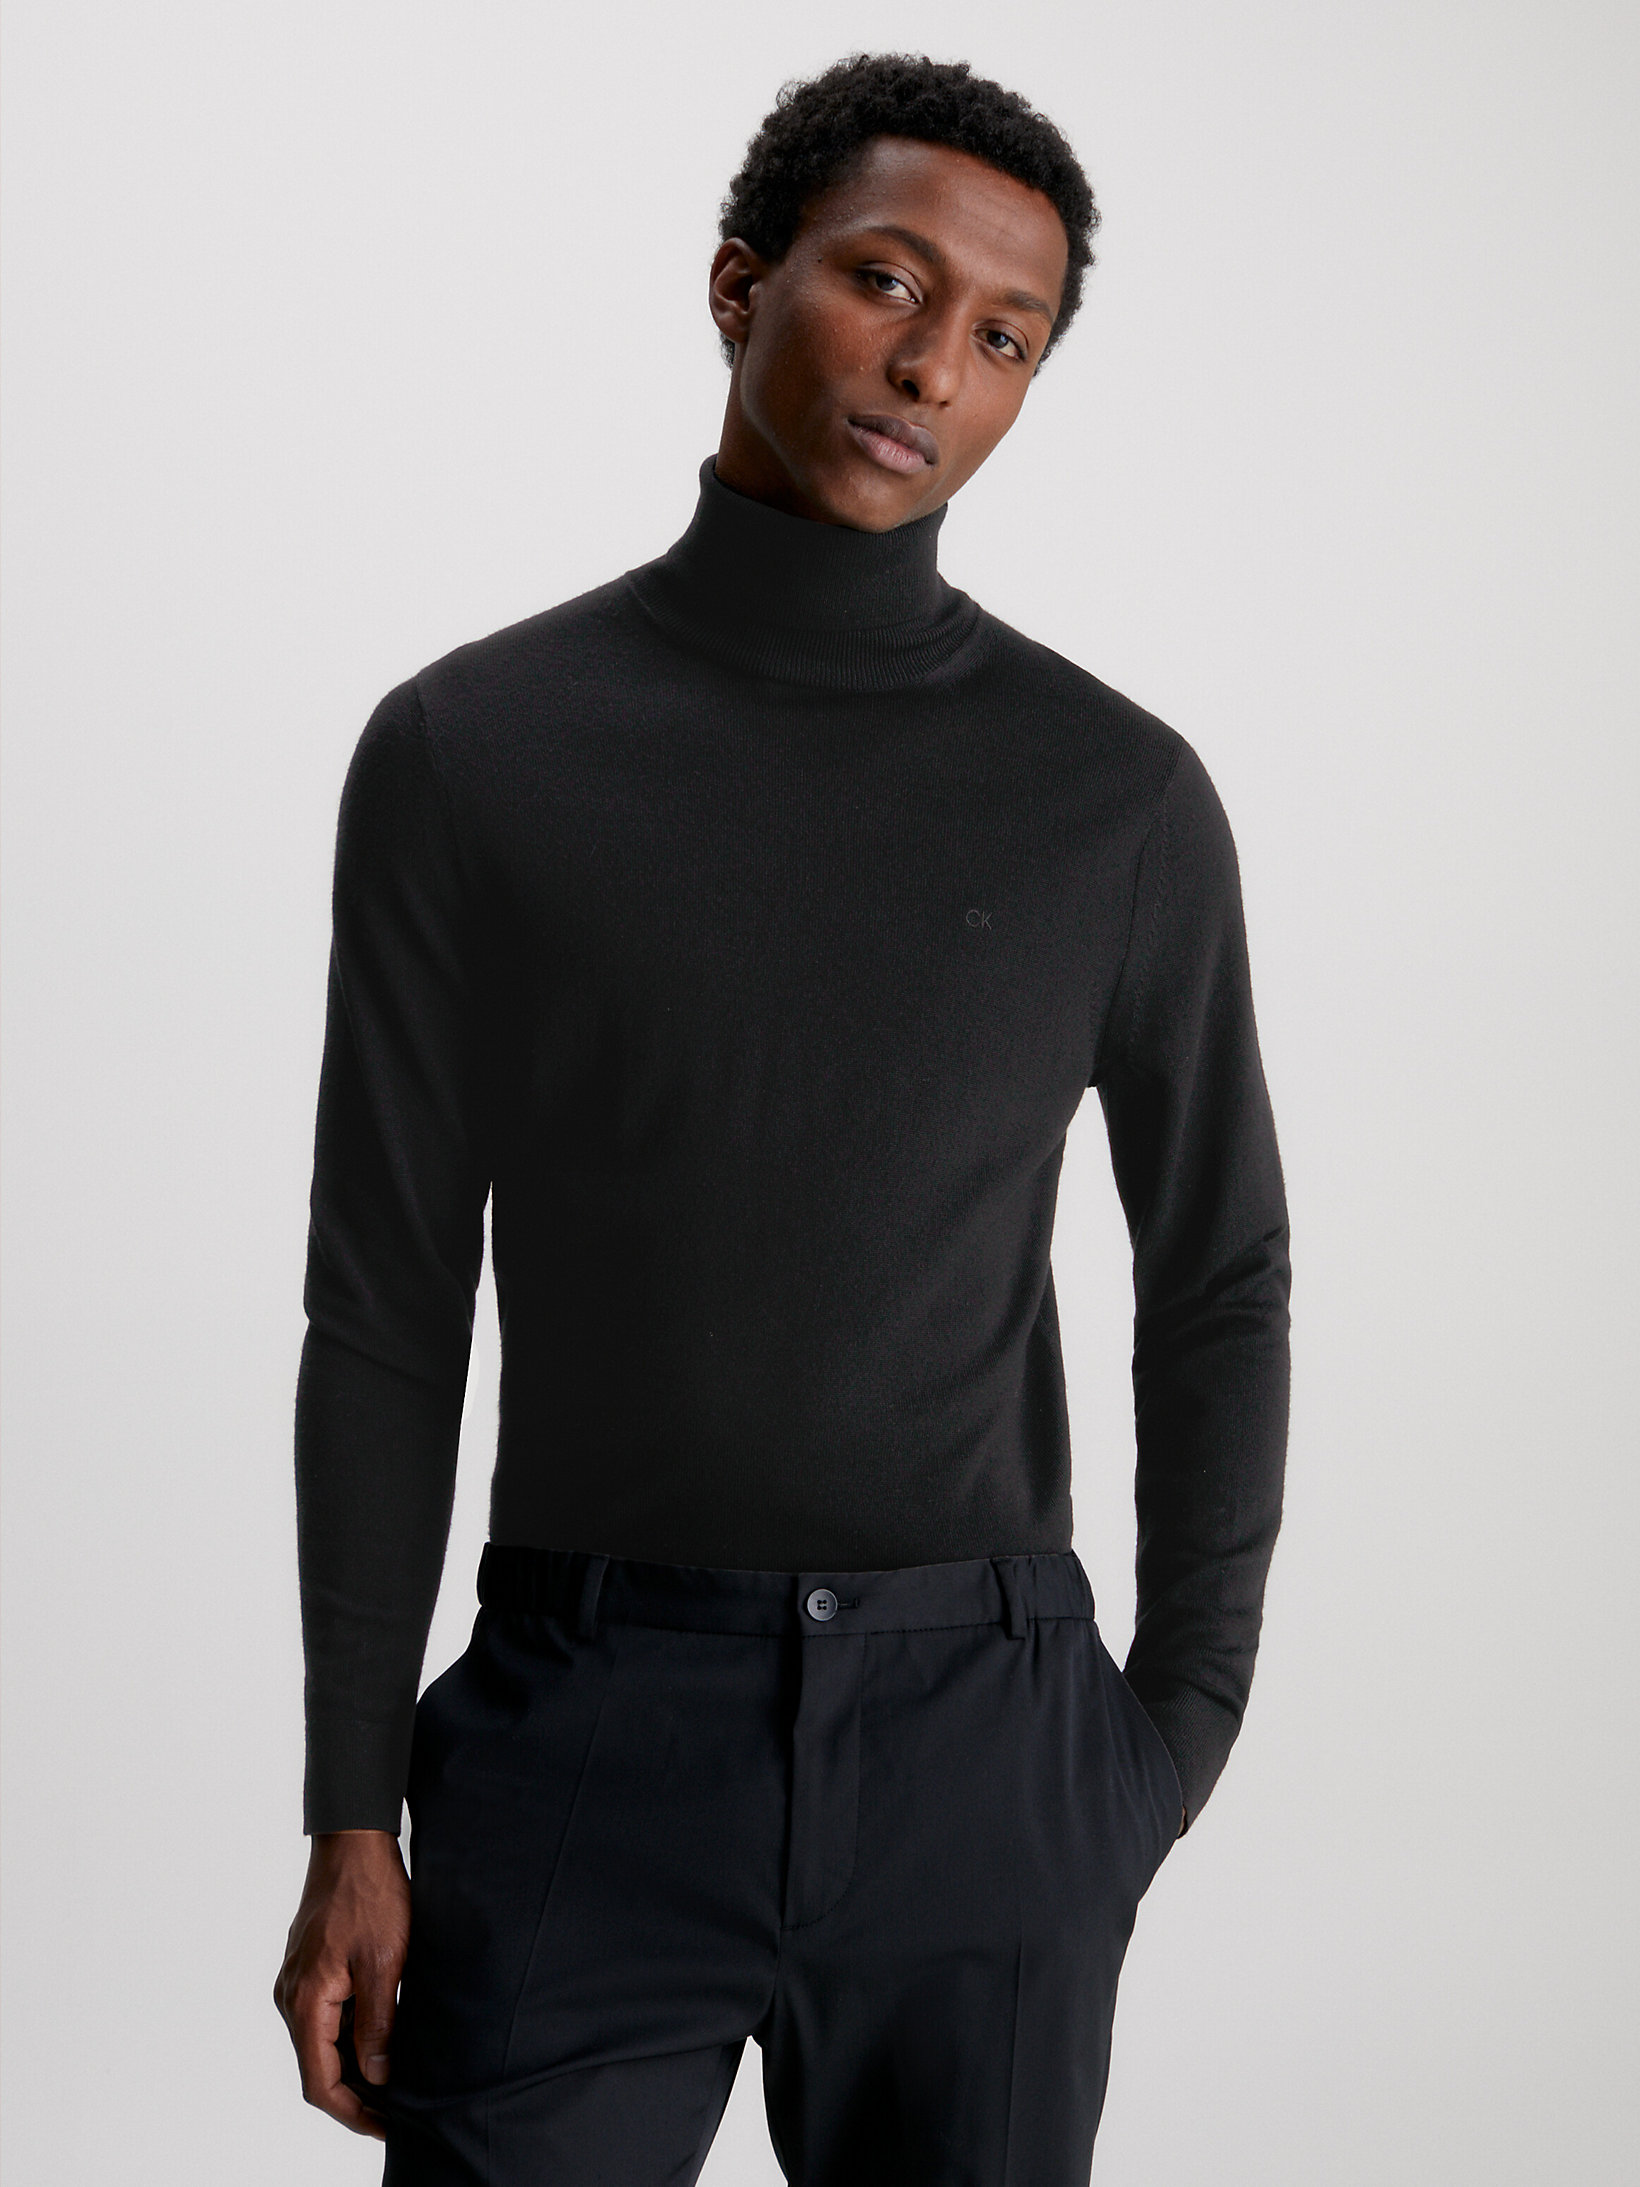 Maglione a collo alto in lana merino Calvin Klein Uomo Abbigliamento Maglioni e cardigan Maglioni Maglioni a collo alto 